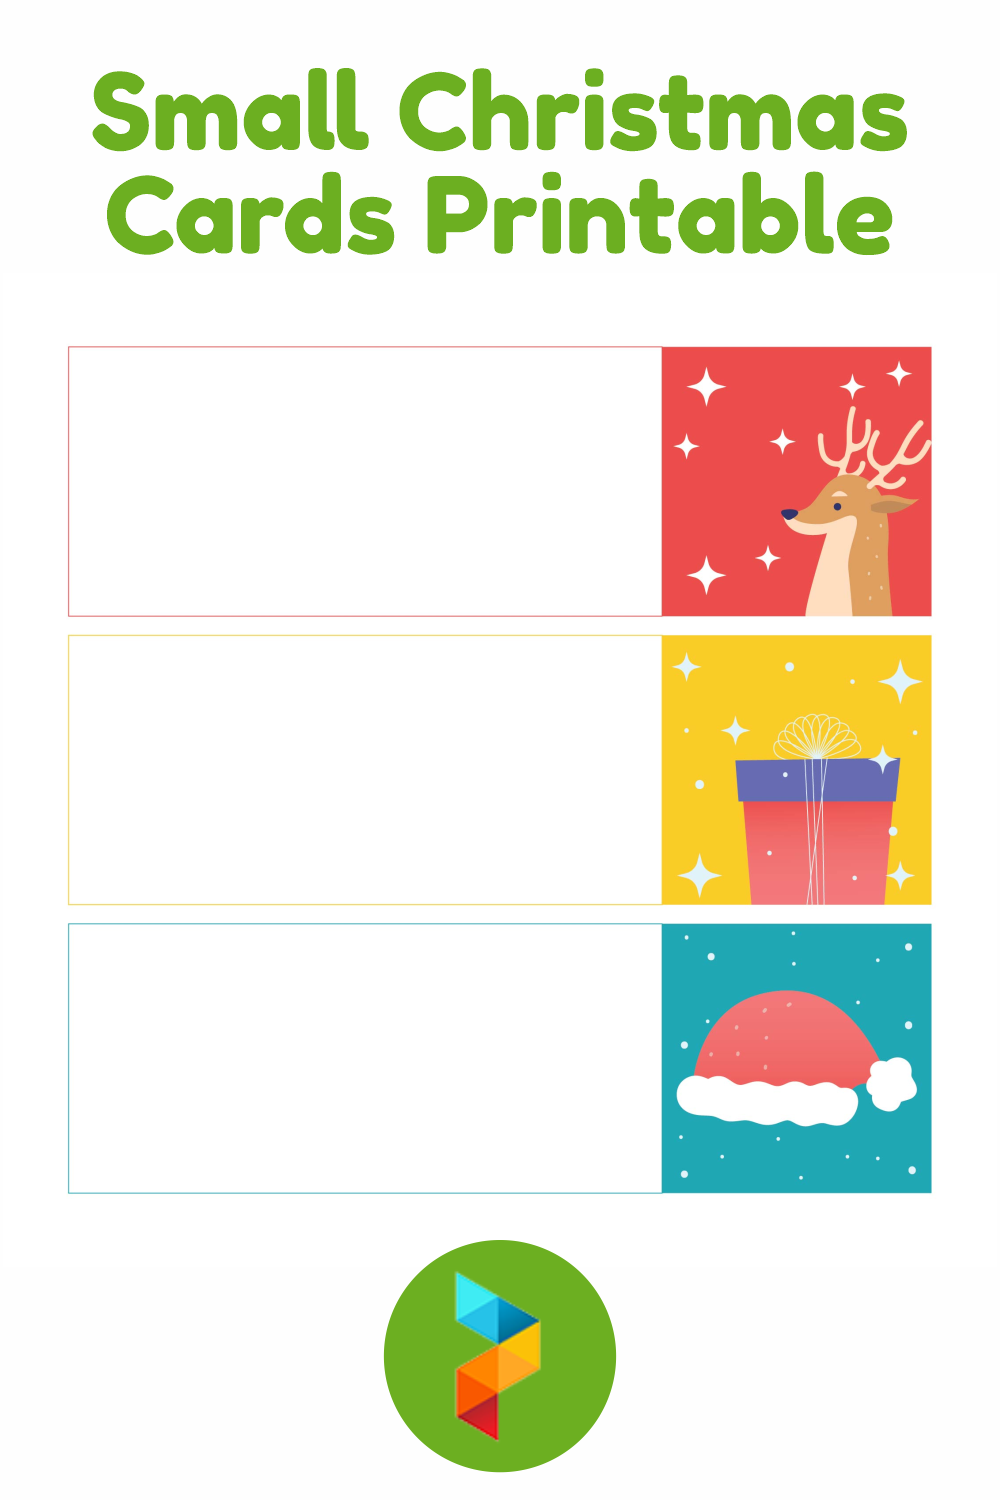 Small Christmas Cards Printable